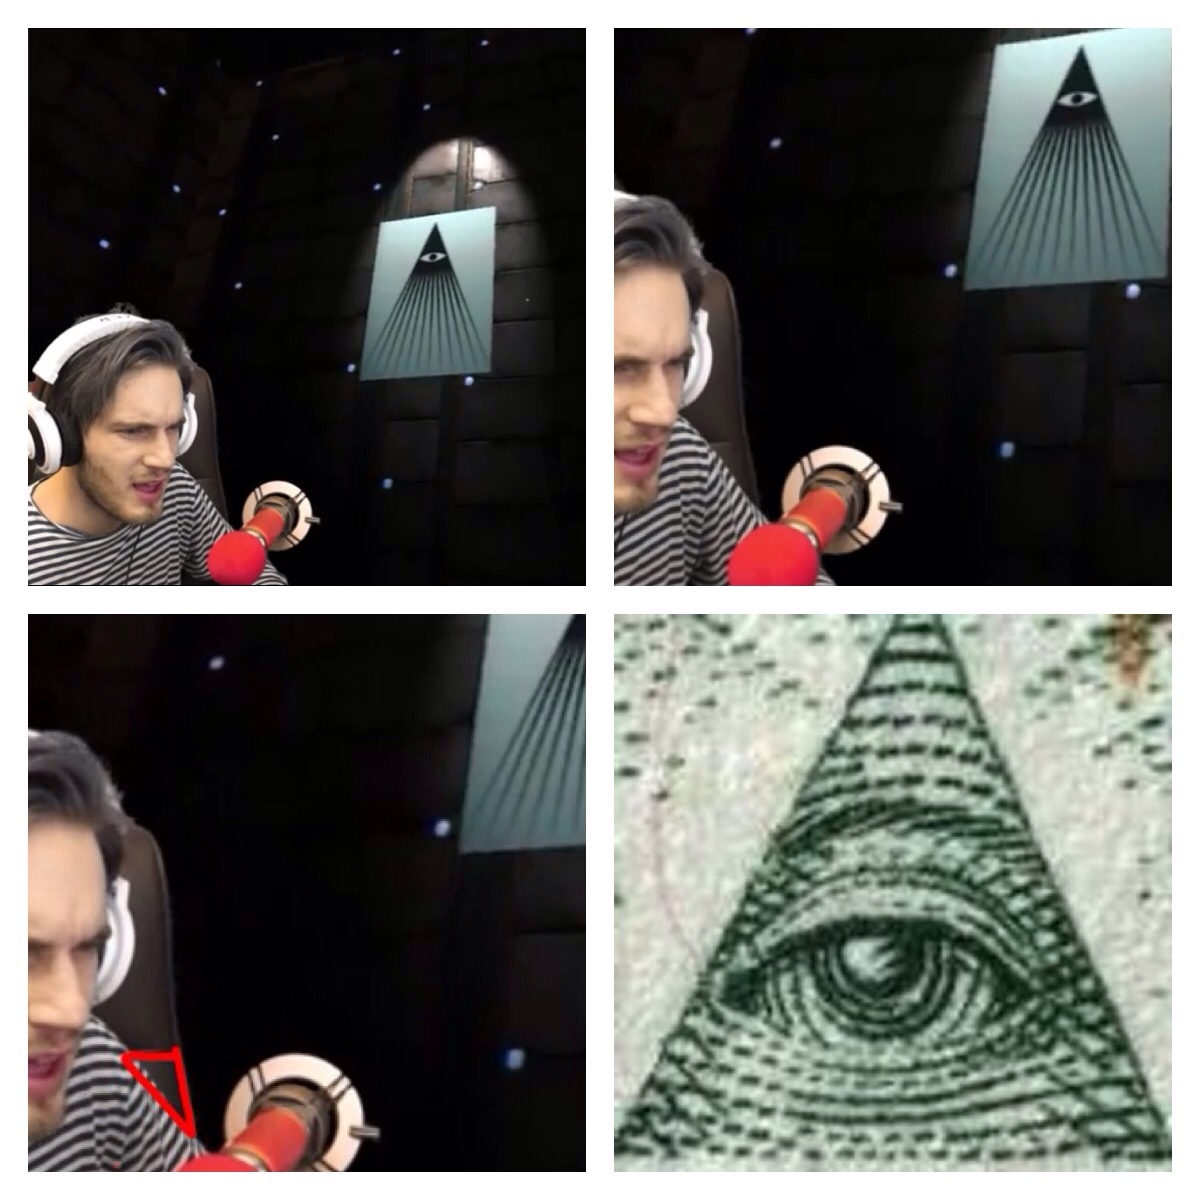 pewdiepie is illuminati confirmed - Meme by CRManuel :) Memedroid